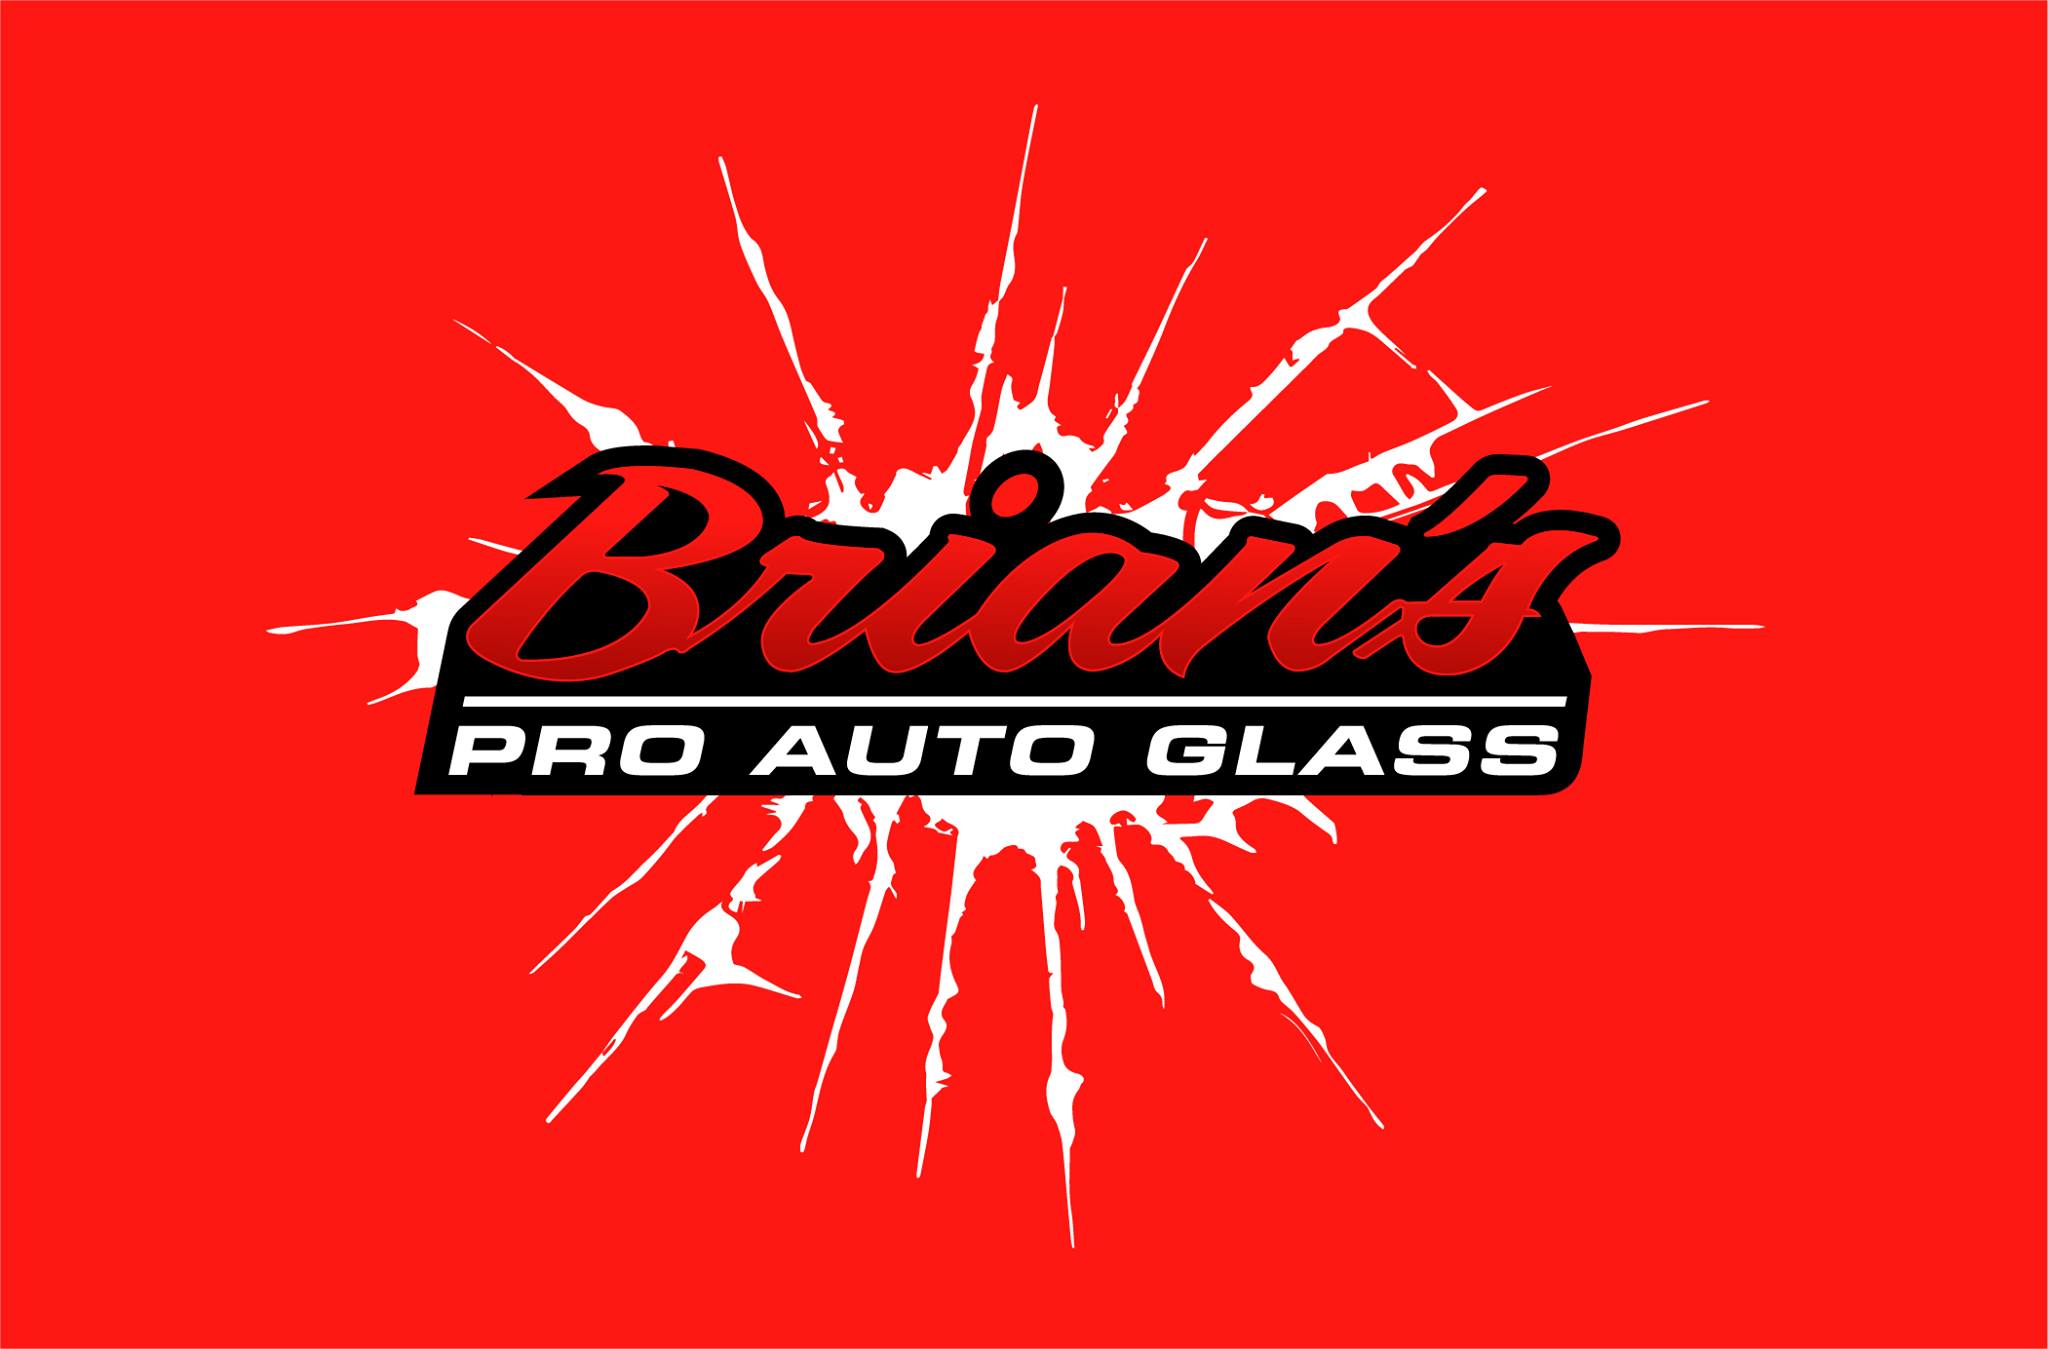 Brian's Pro Auto Glass